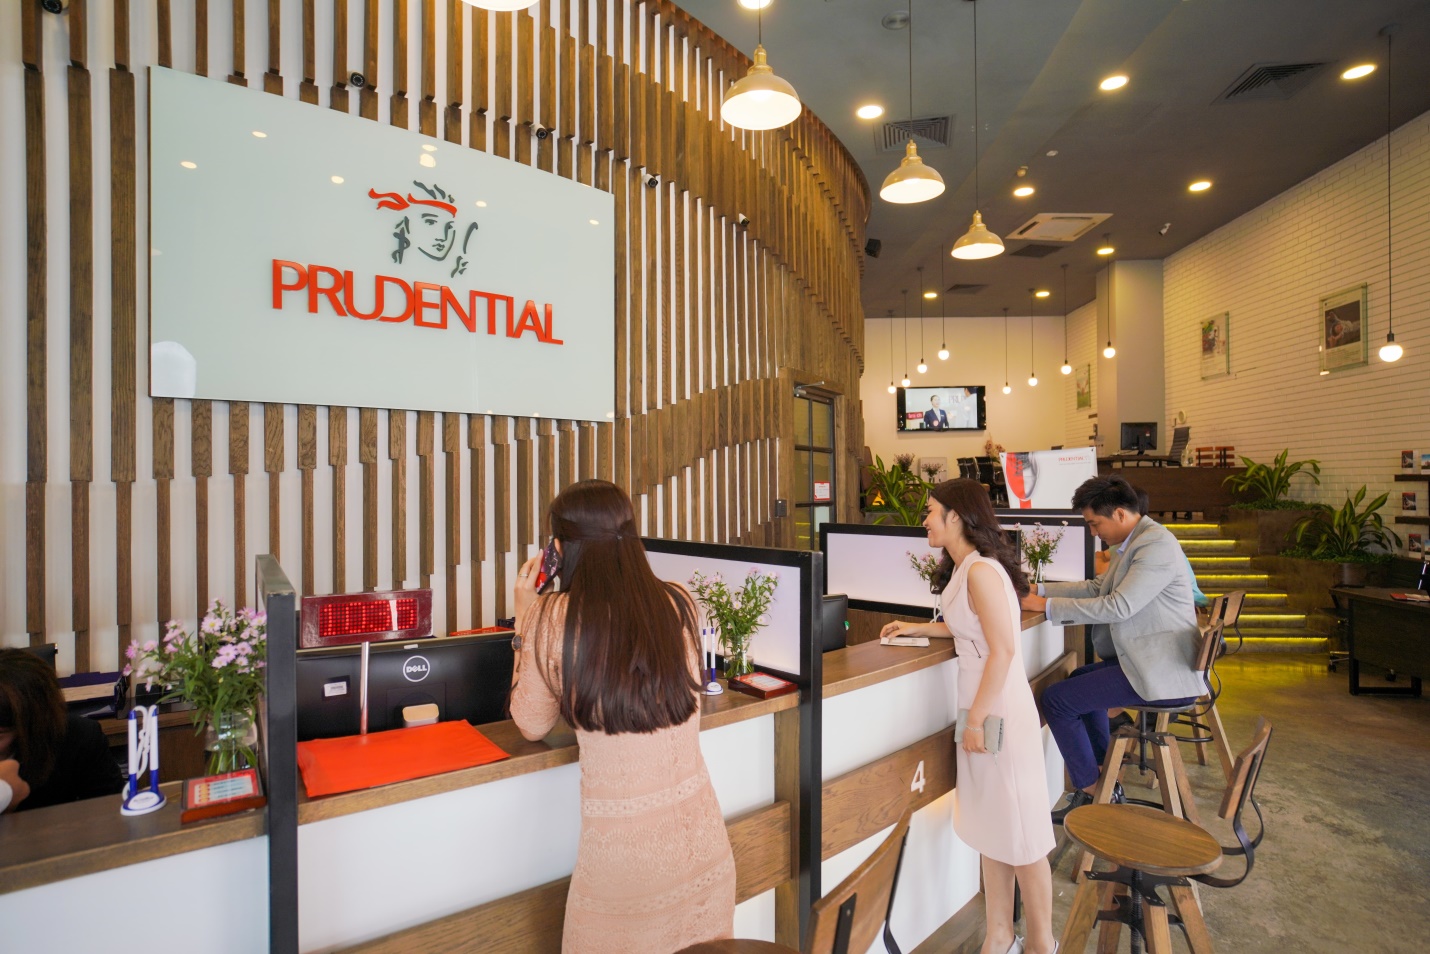 Prudential cam kết hỗ trợ cho khách hàng bị nhiễm virus corona